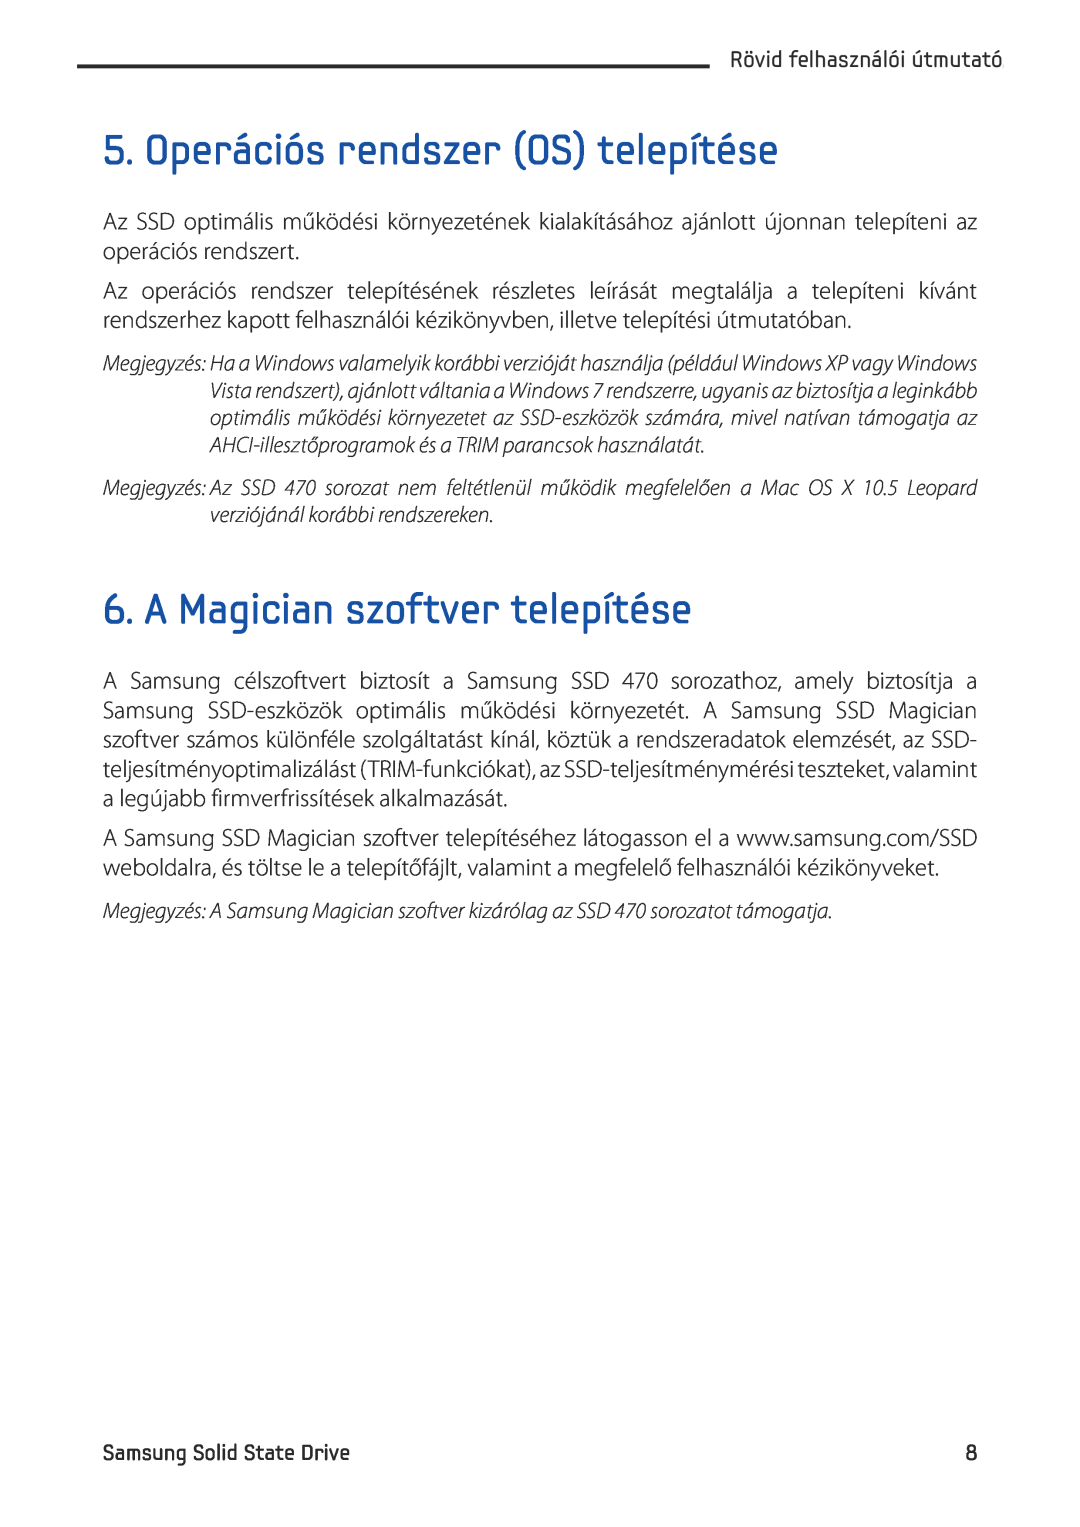 Samsung MZ-5PA064/EU, MZ-5PA256C/EU, MZ-5PA128C/EU manual Operációs rendszer OS telepítése, A Magician szoftver telepítése 